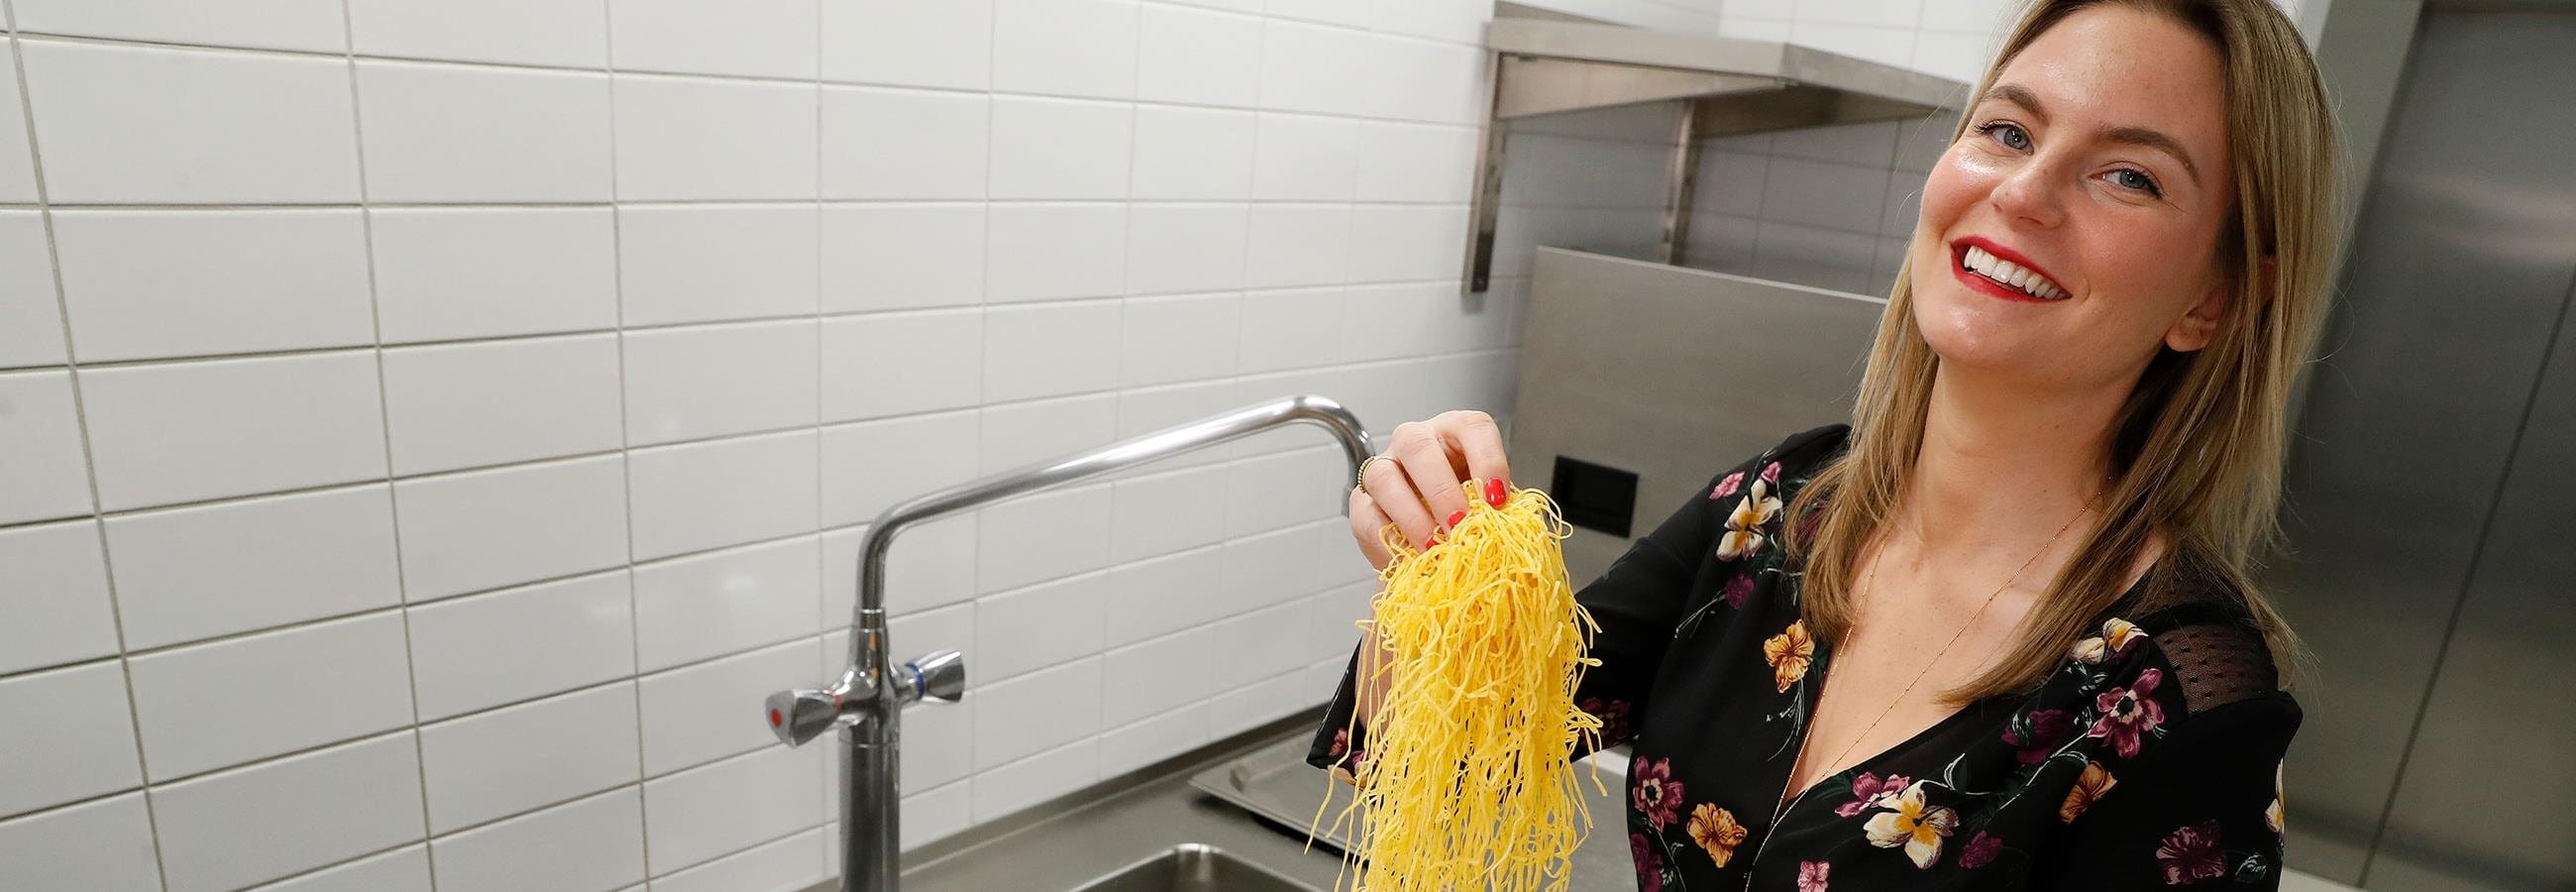 La food blogger cucina gli spaghetti 